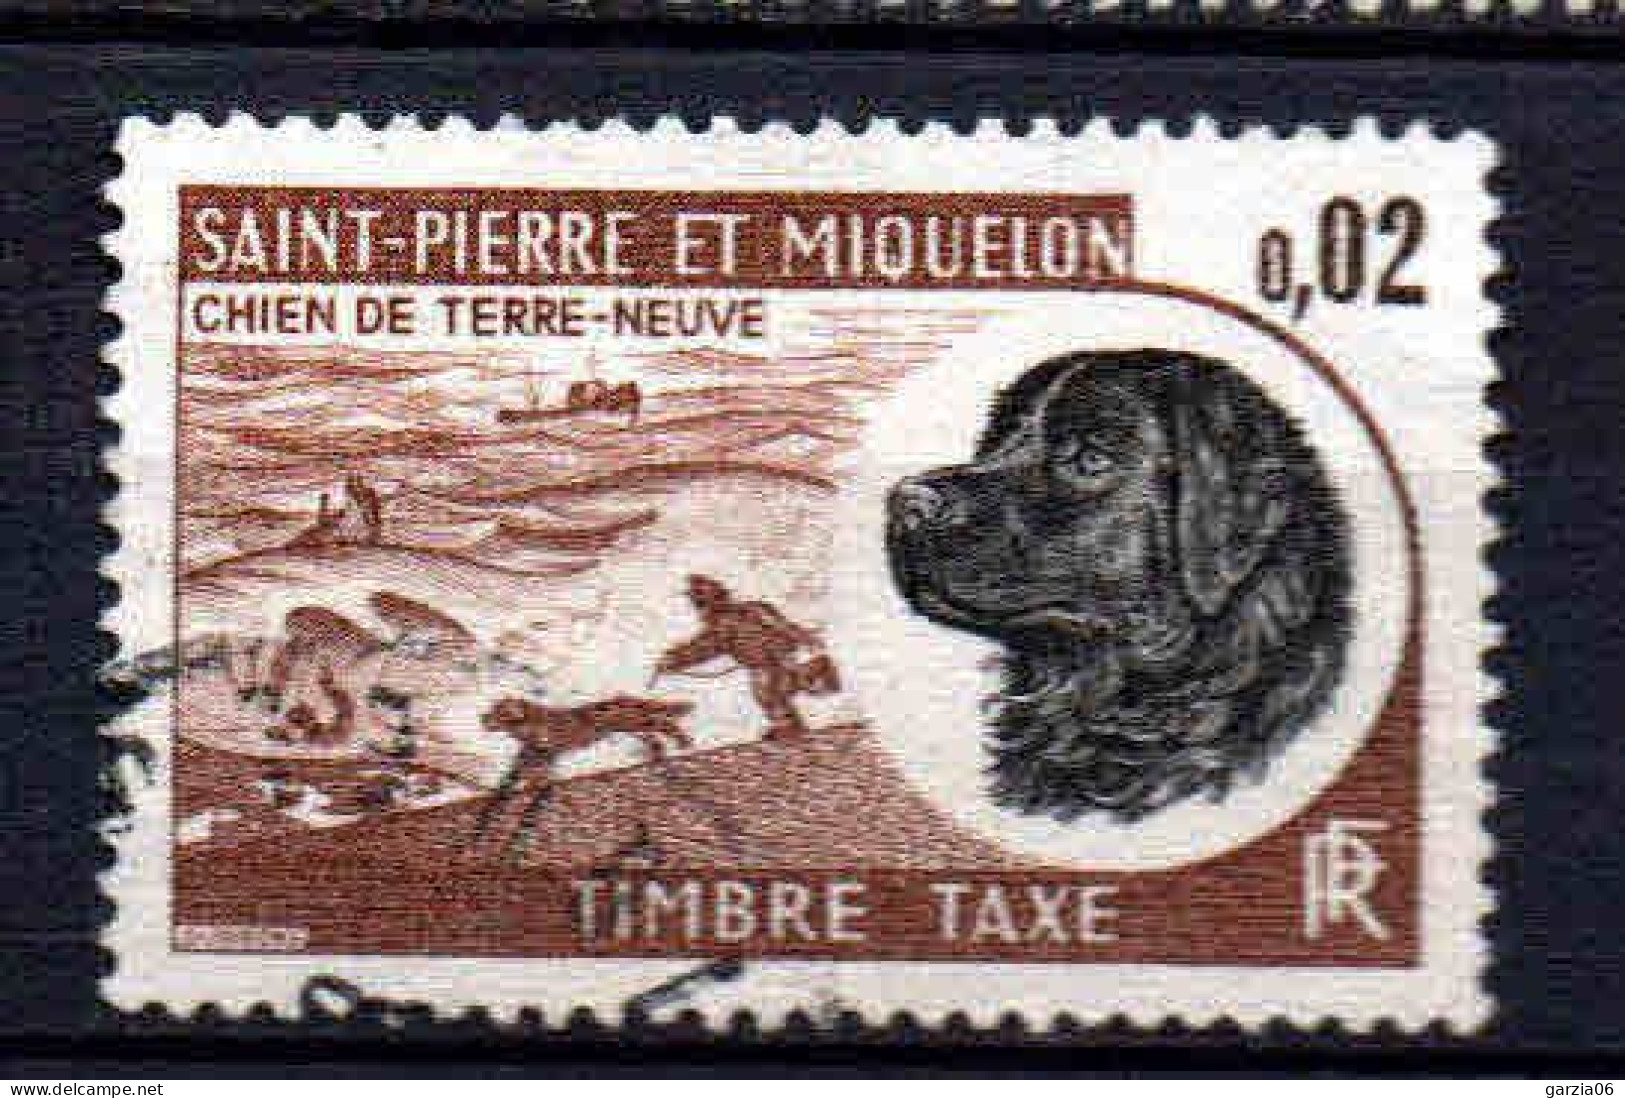 St Pierre Et Miquelon    - 1973 -  Chien De Terre Neuve - Tb Taxe  -  N° 77  - Oblit - Used - Segnatasse